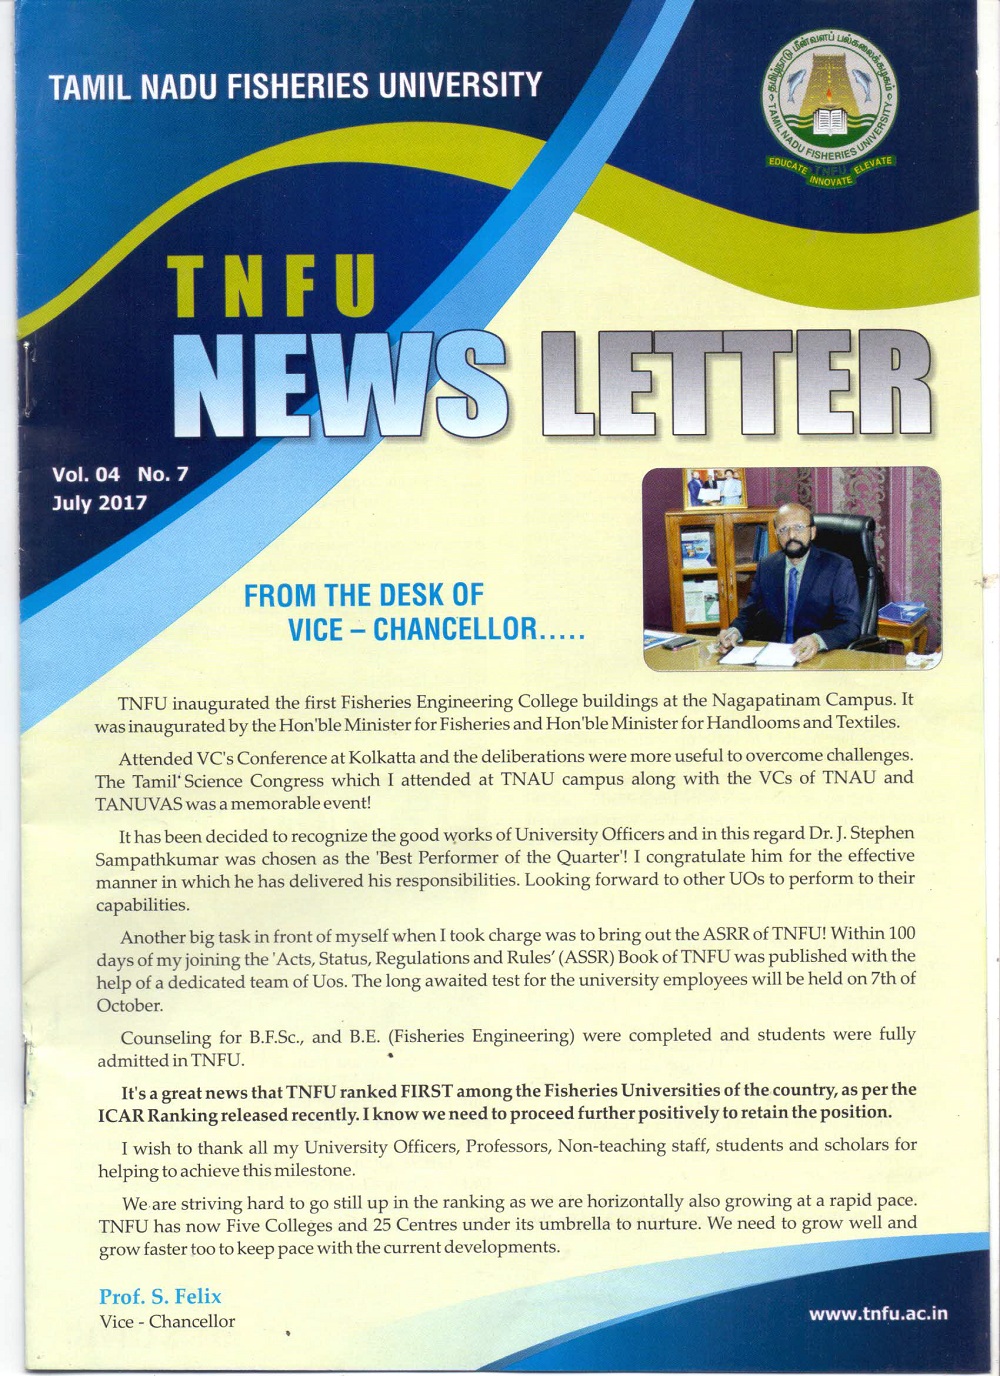 TNJFU Newsletter